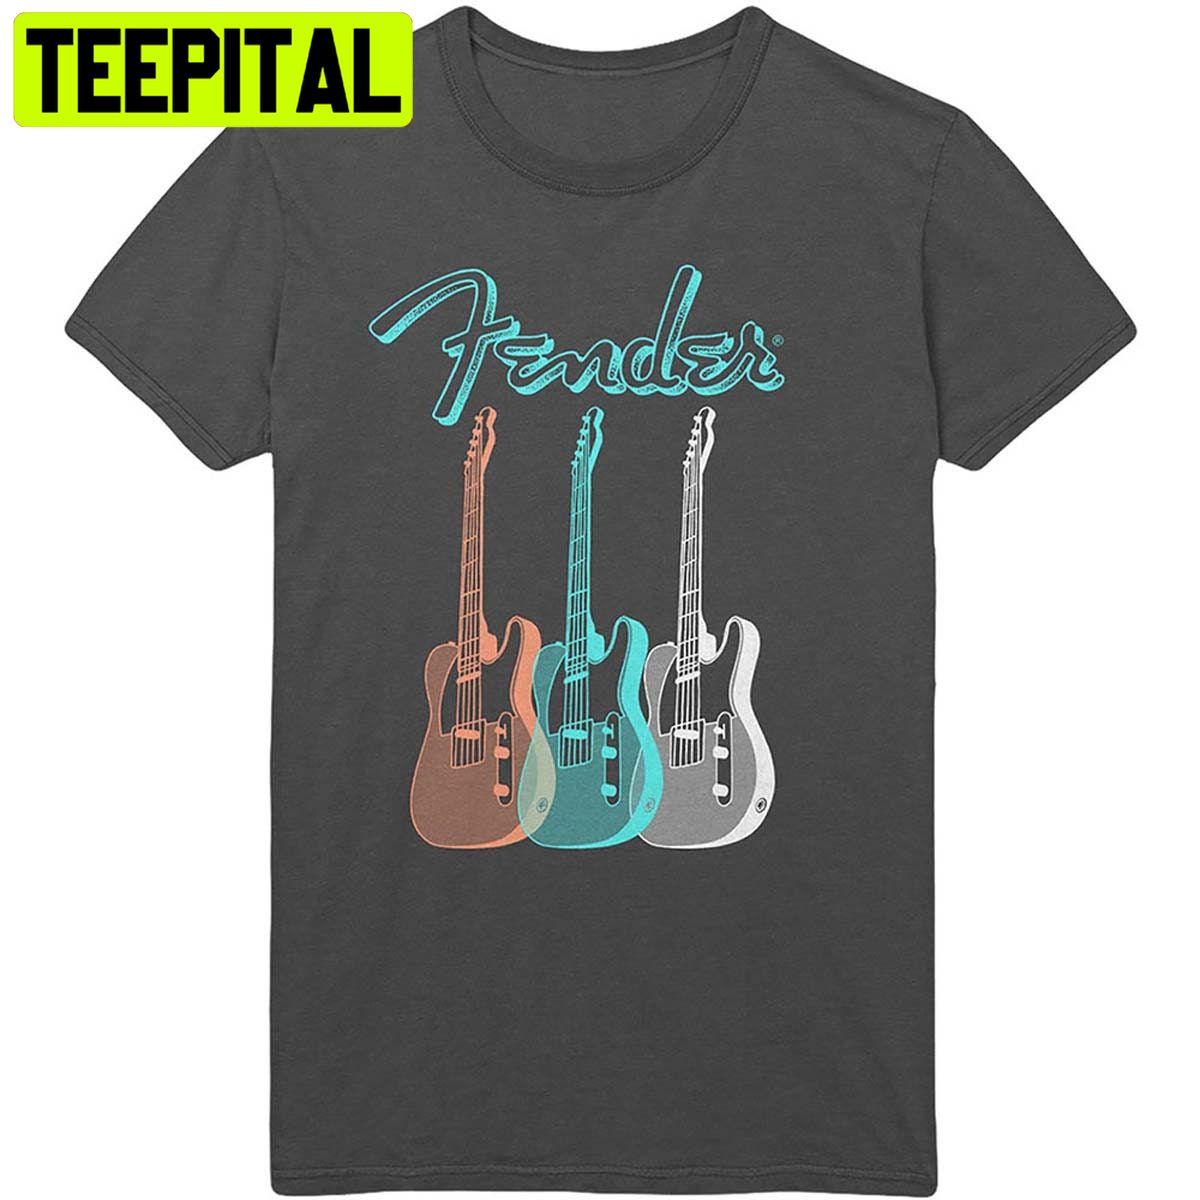 Fender Electric Guitars Telecaster Trending Unisex Shirt